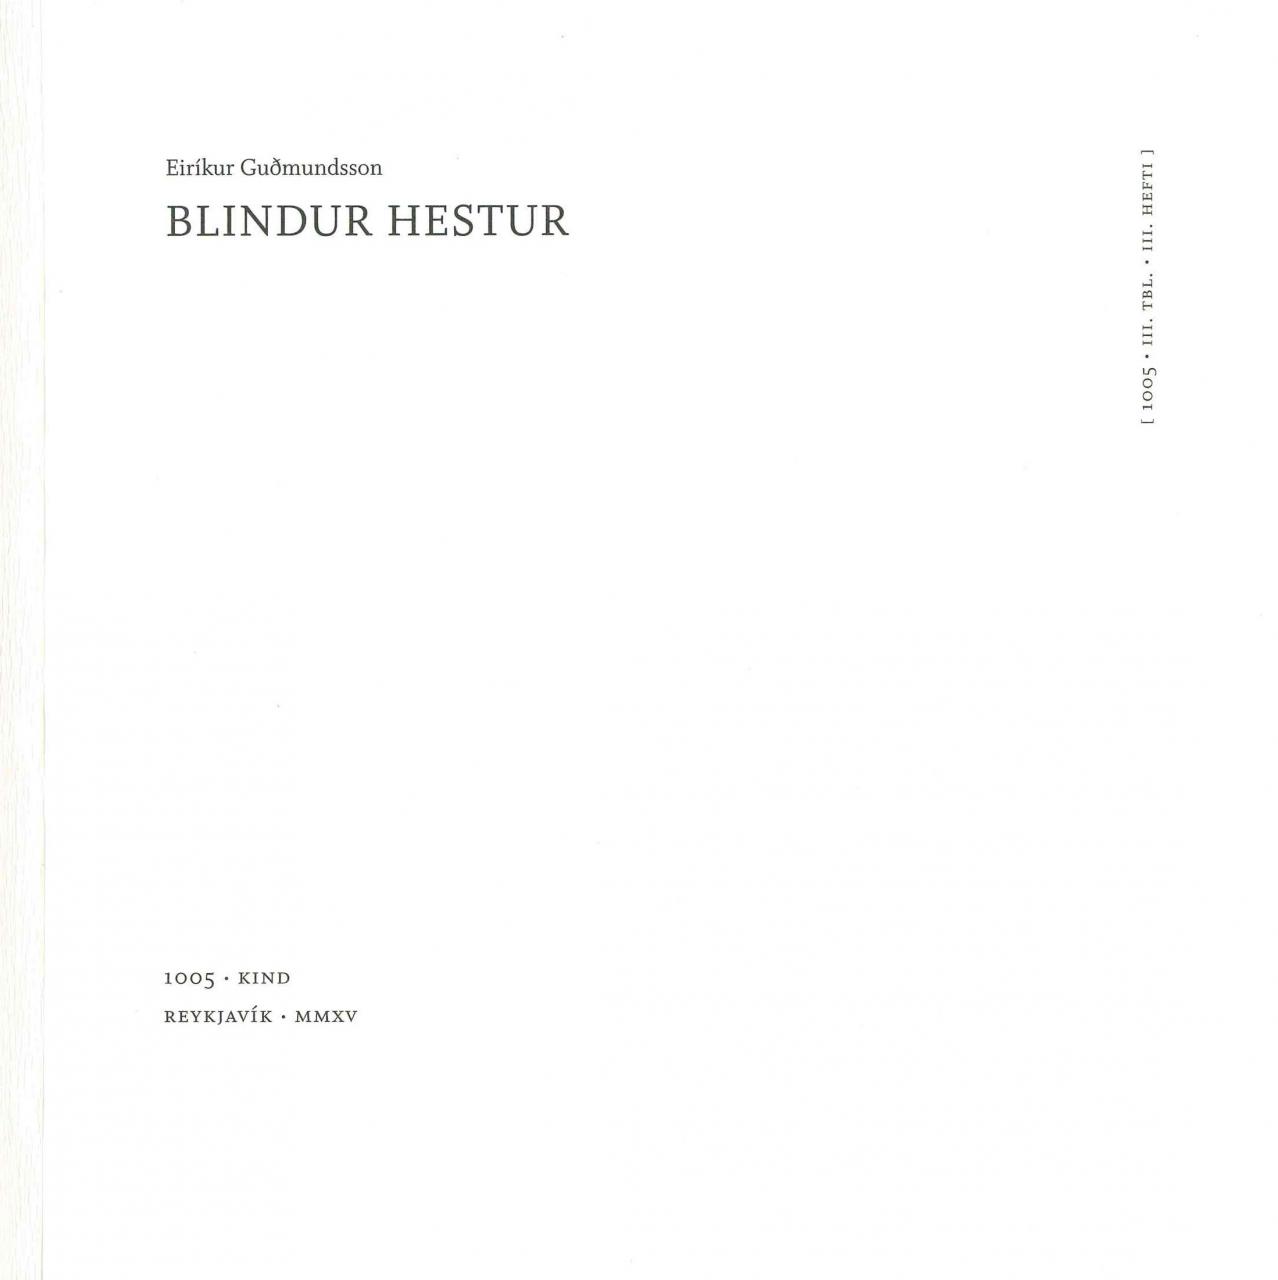 Blindur hestur (A Blind Horse)